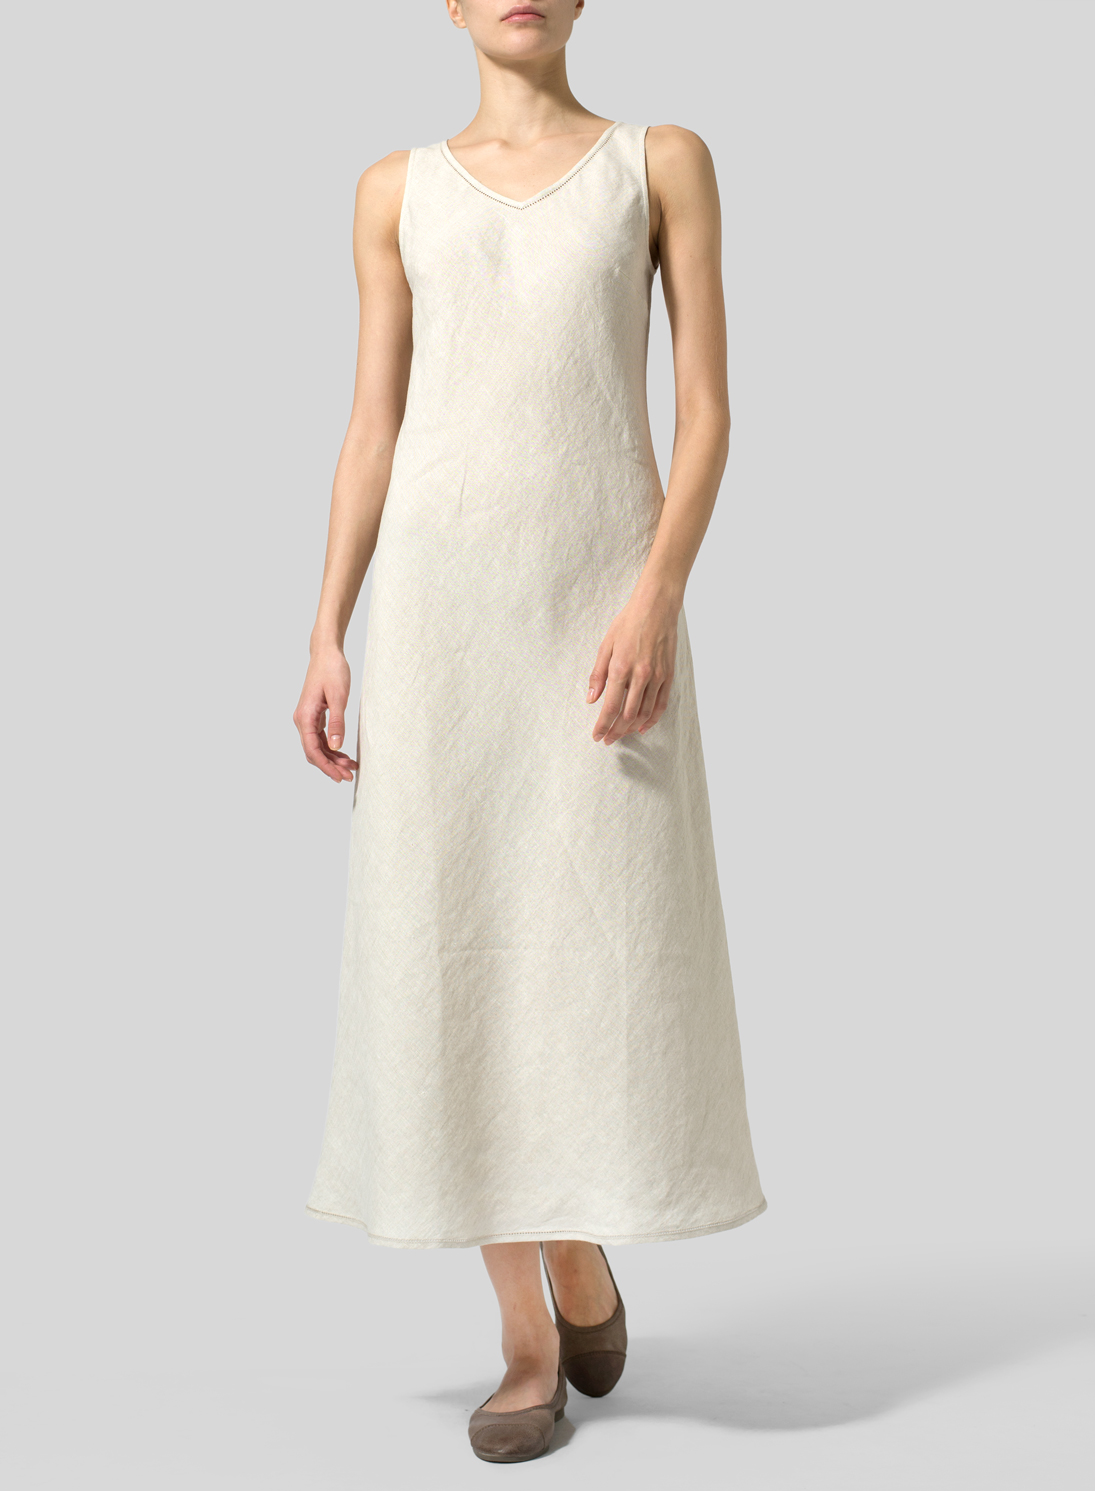 Linen Bias Cut Sleeveless Long Dress ...